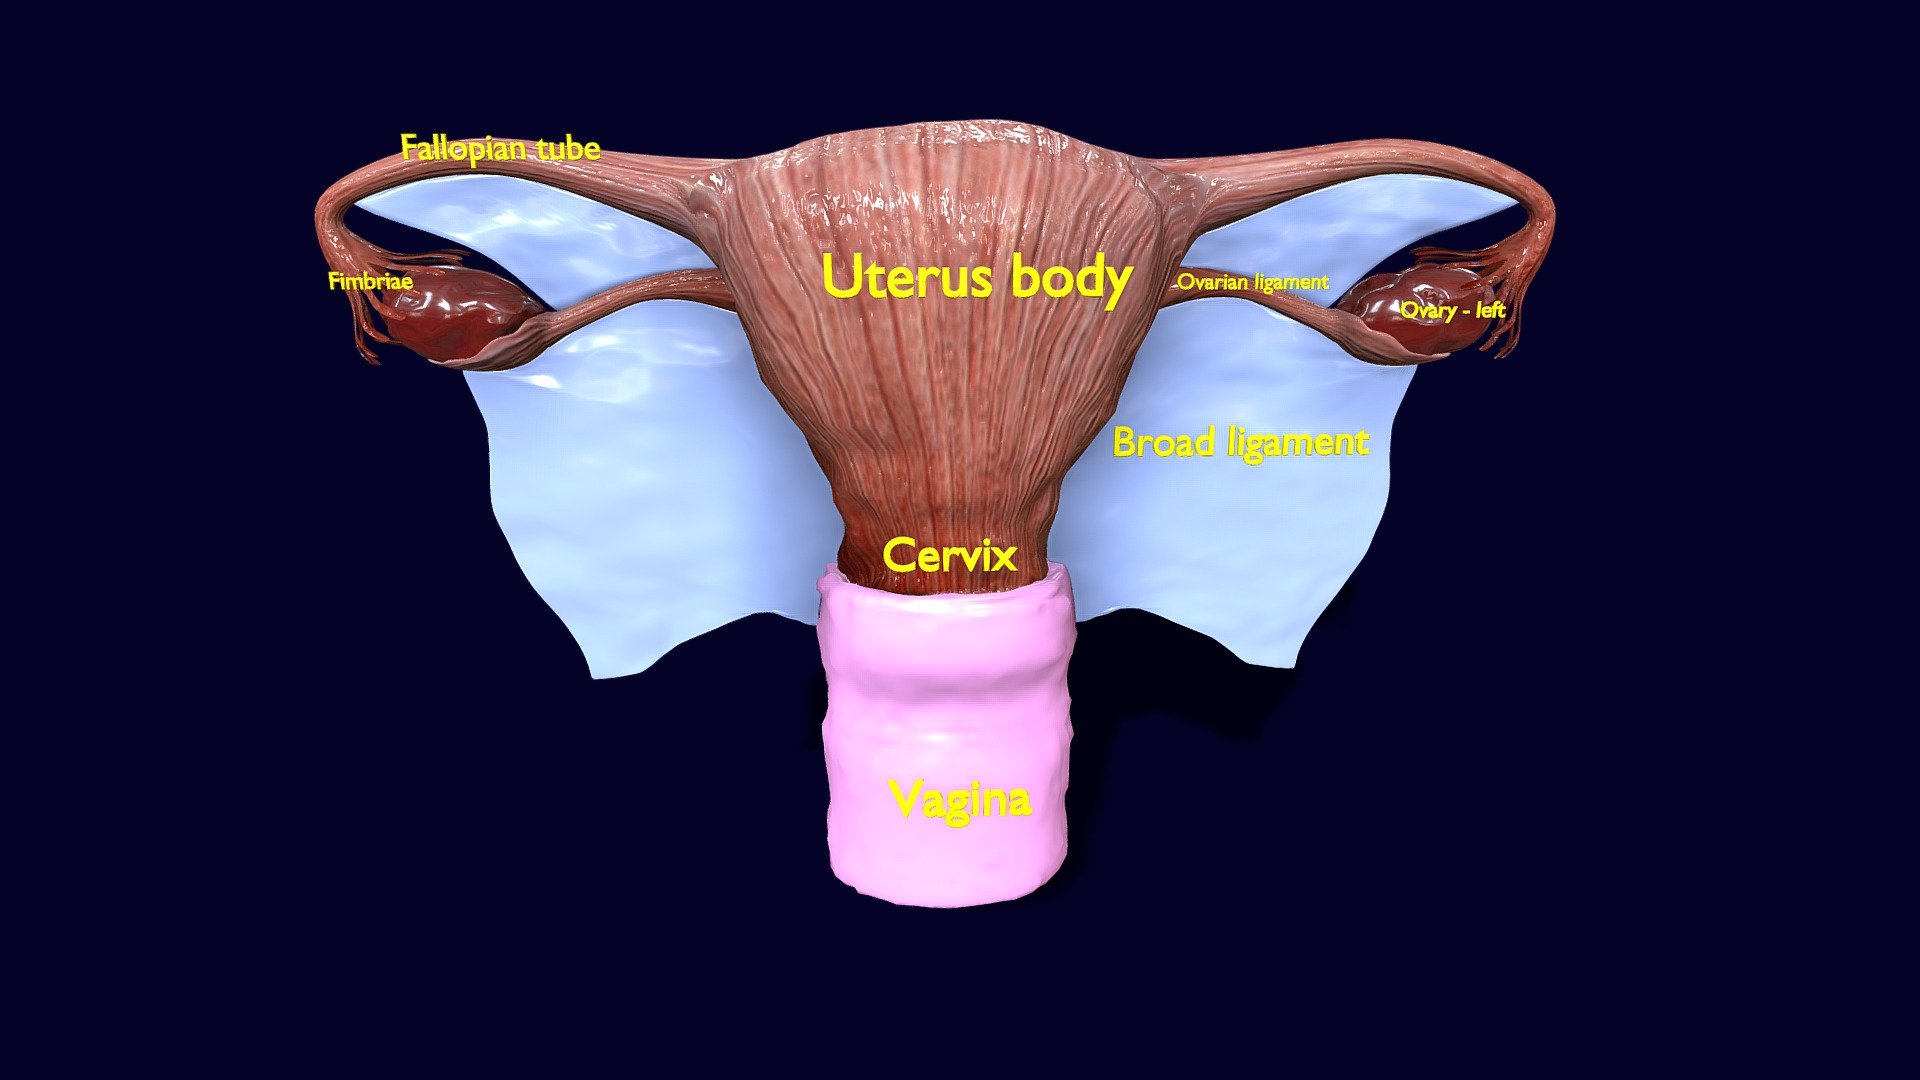 Uterus Blend